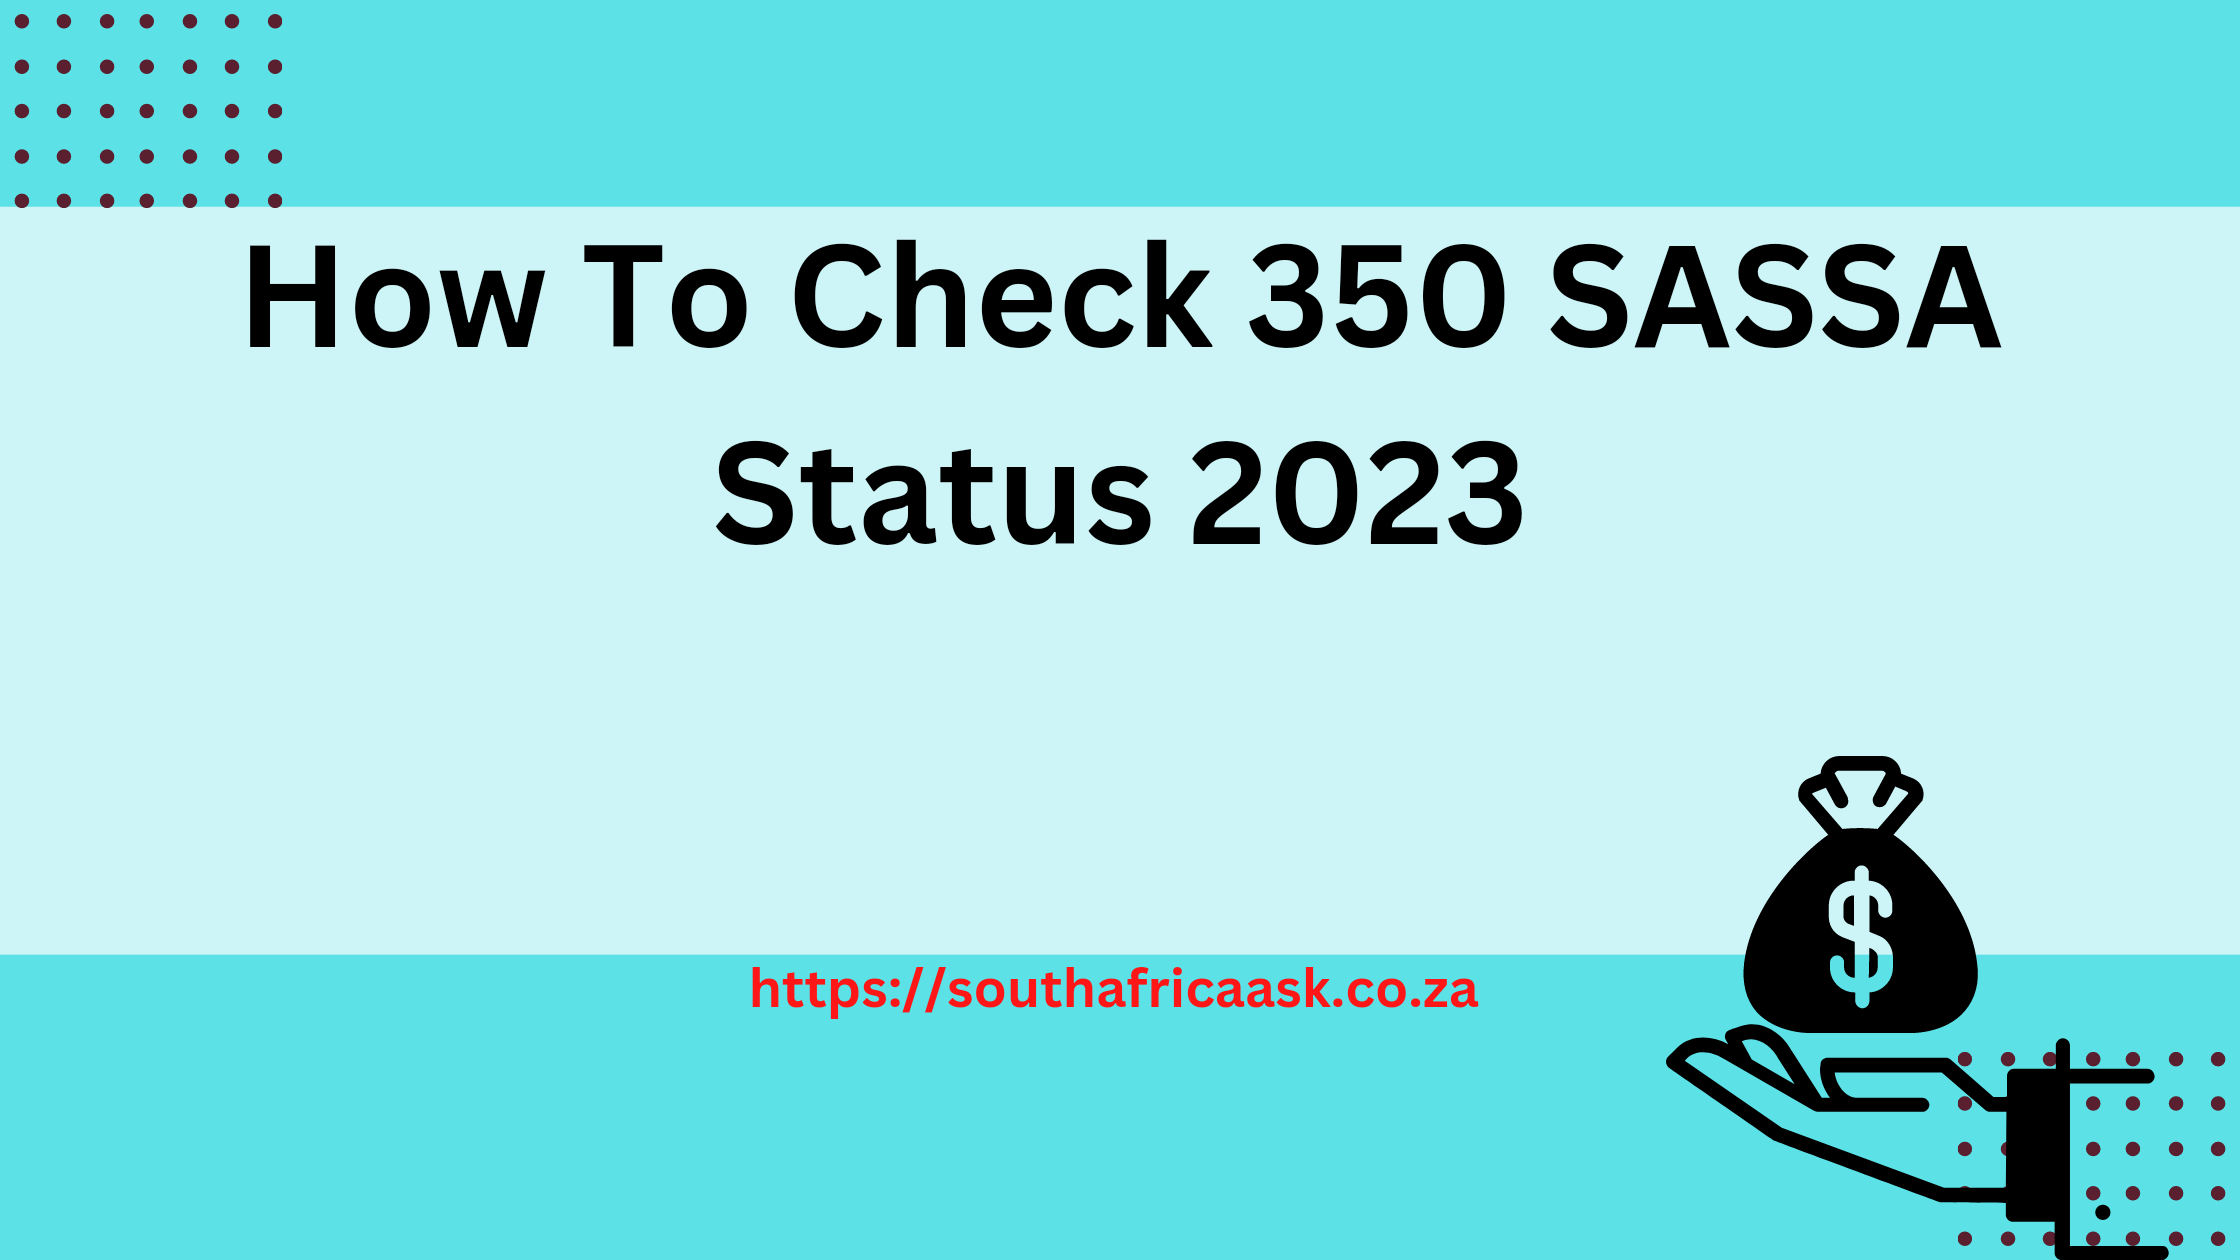 How To Check 350 SASSA Status 2023